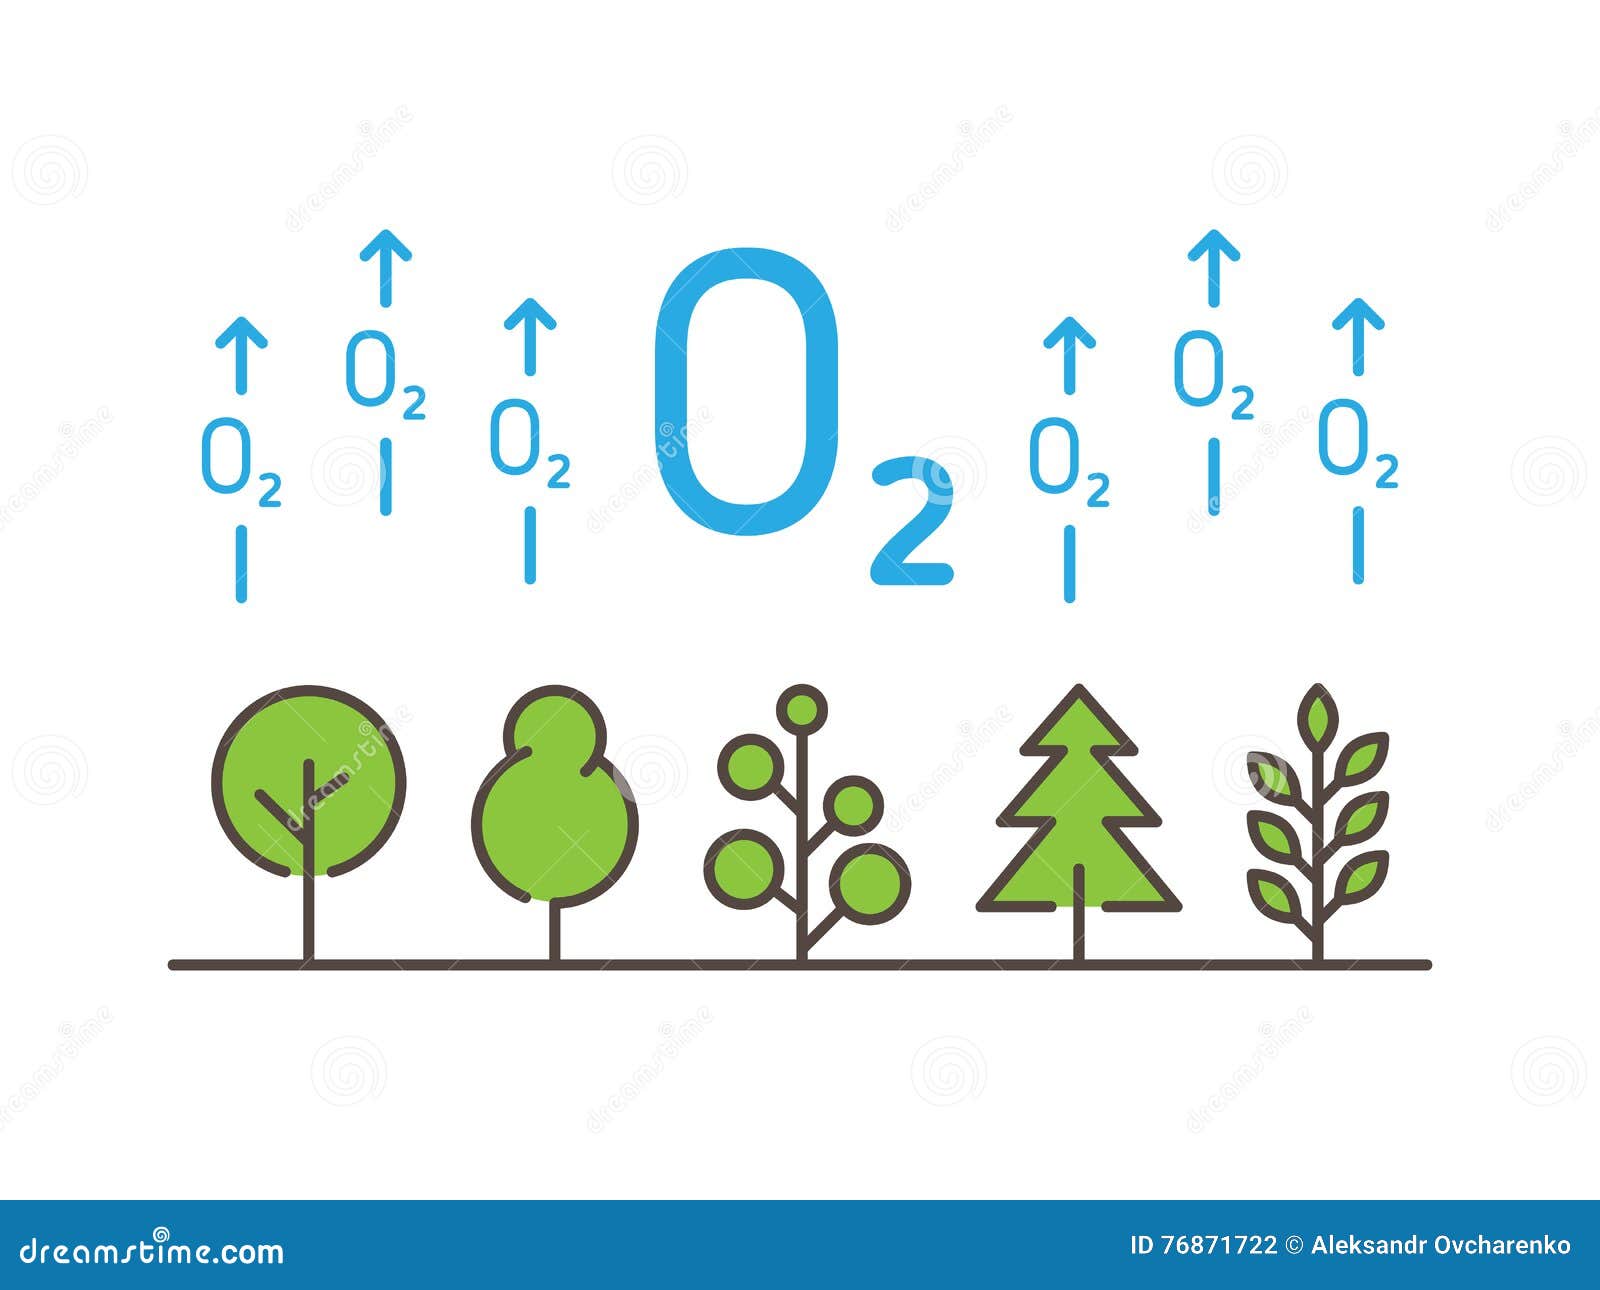 Очищение воздуха деревьями. Деревья выделяют кислород. Деревья производят кислород. Кислород из деревьев. Деревья поглощают кислород.